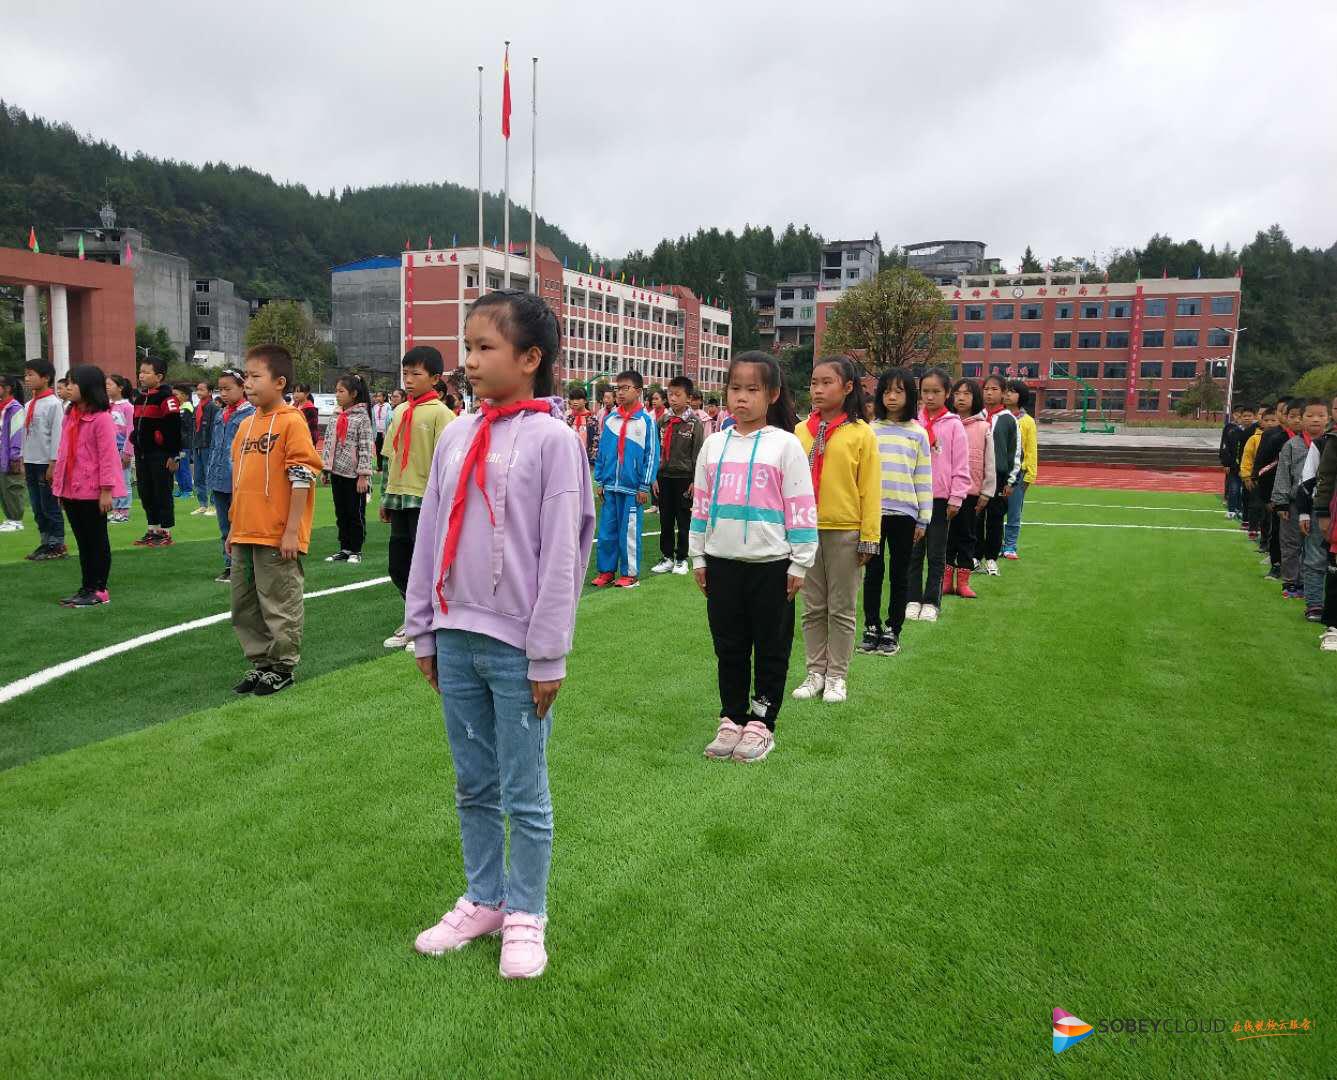 酉阳自治县2020年青少年综合素质提升行动第44站在李溪镇恒美小学校